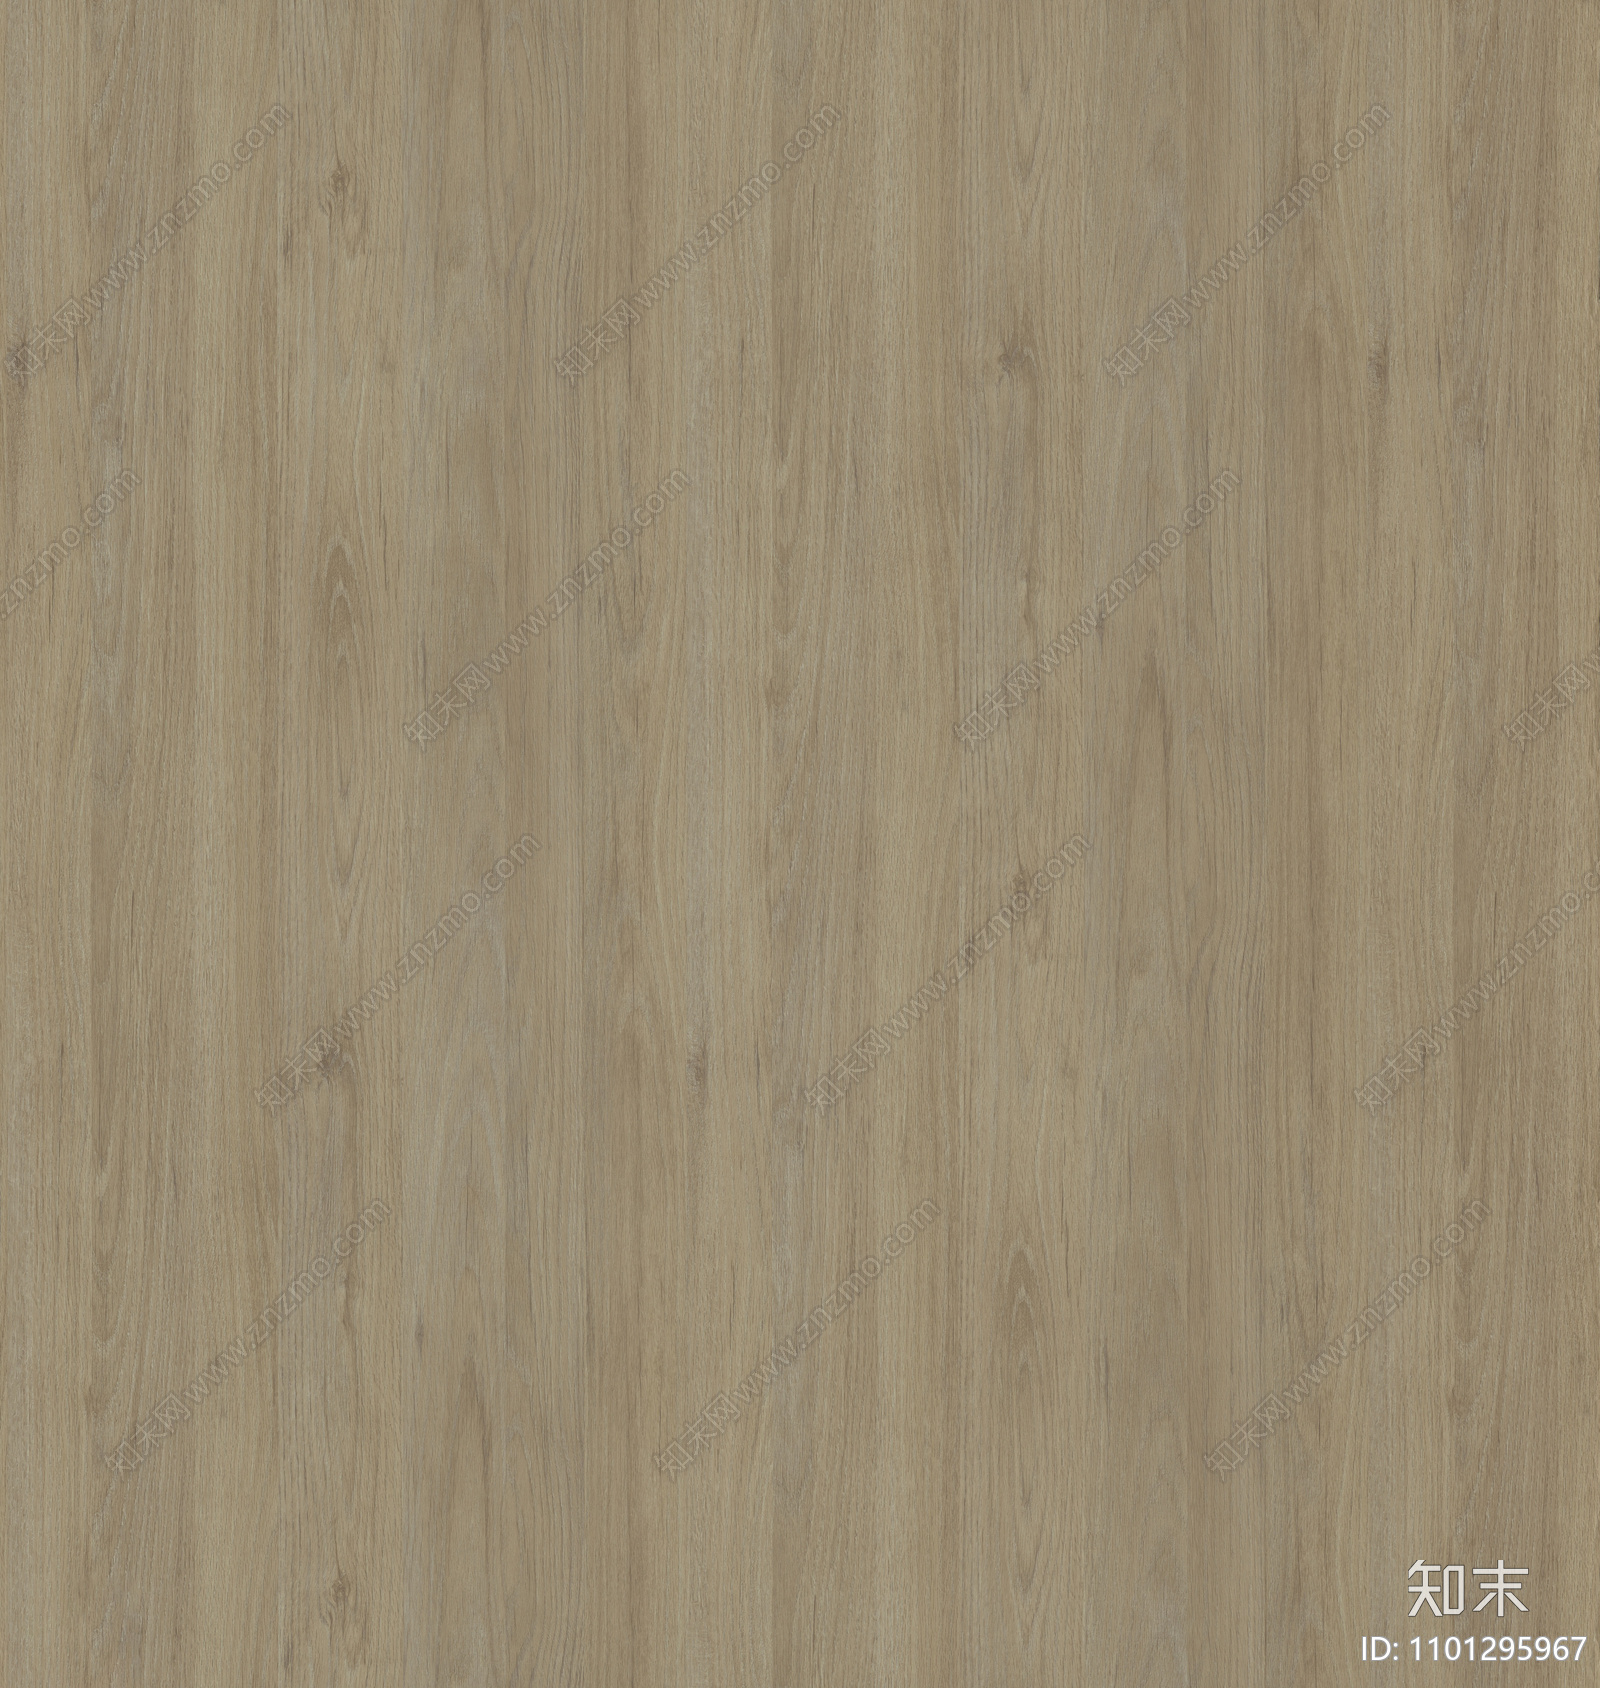 灰棕色橡木木纹贴图下载【id:1101295967】